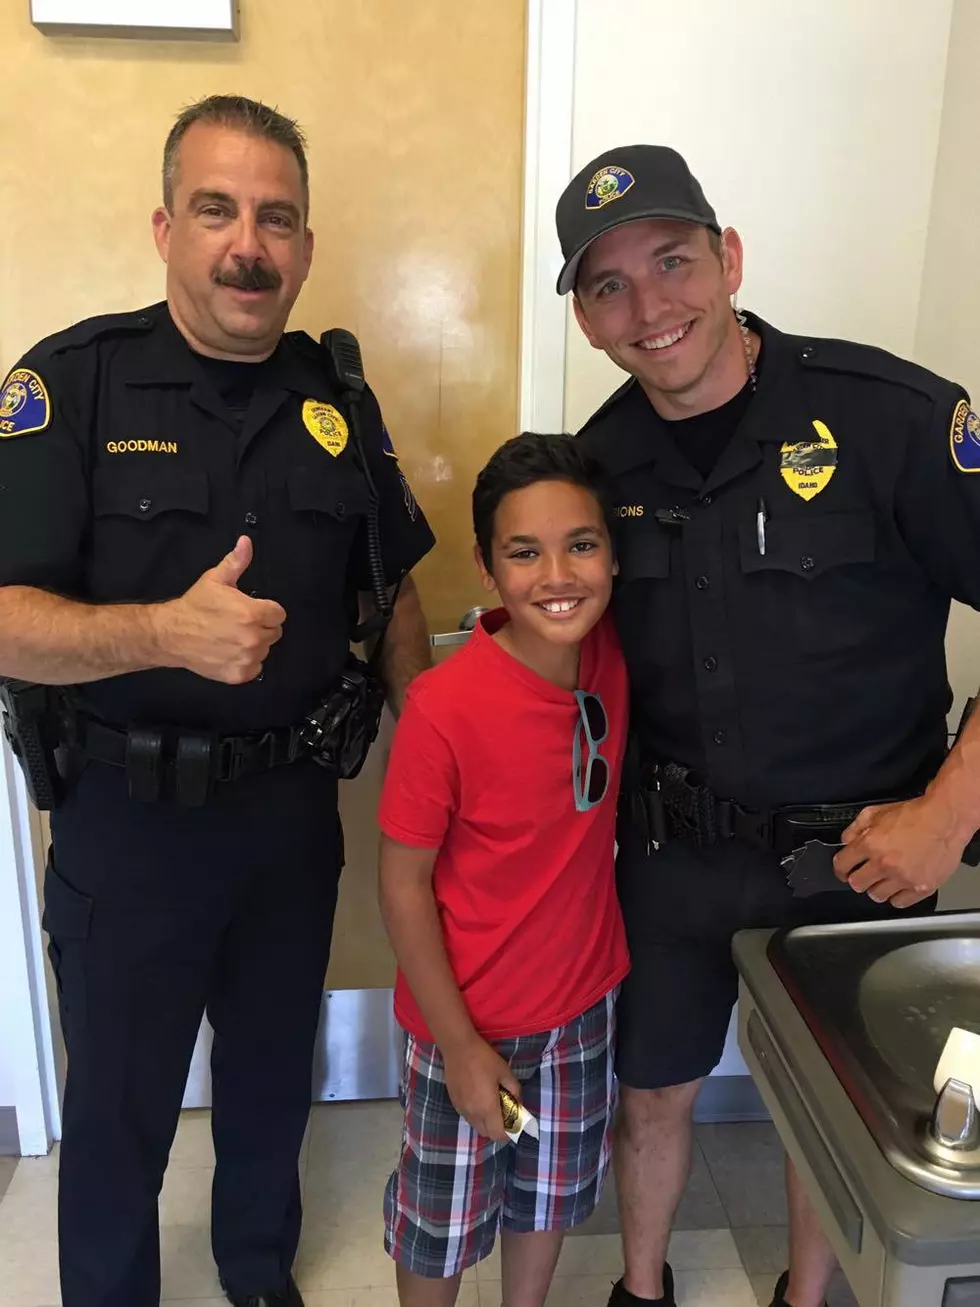 Nicole’s Son Shows His Appreciation For Treasure Valley Police